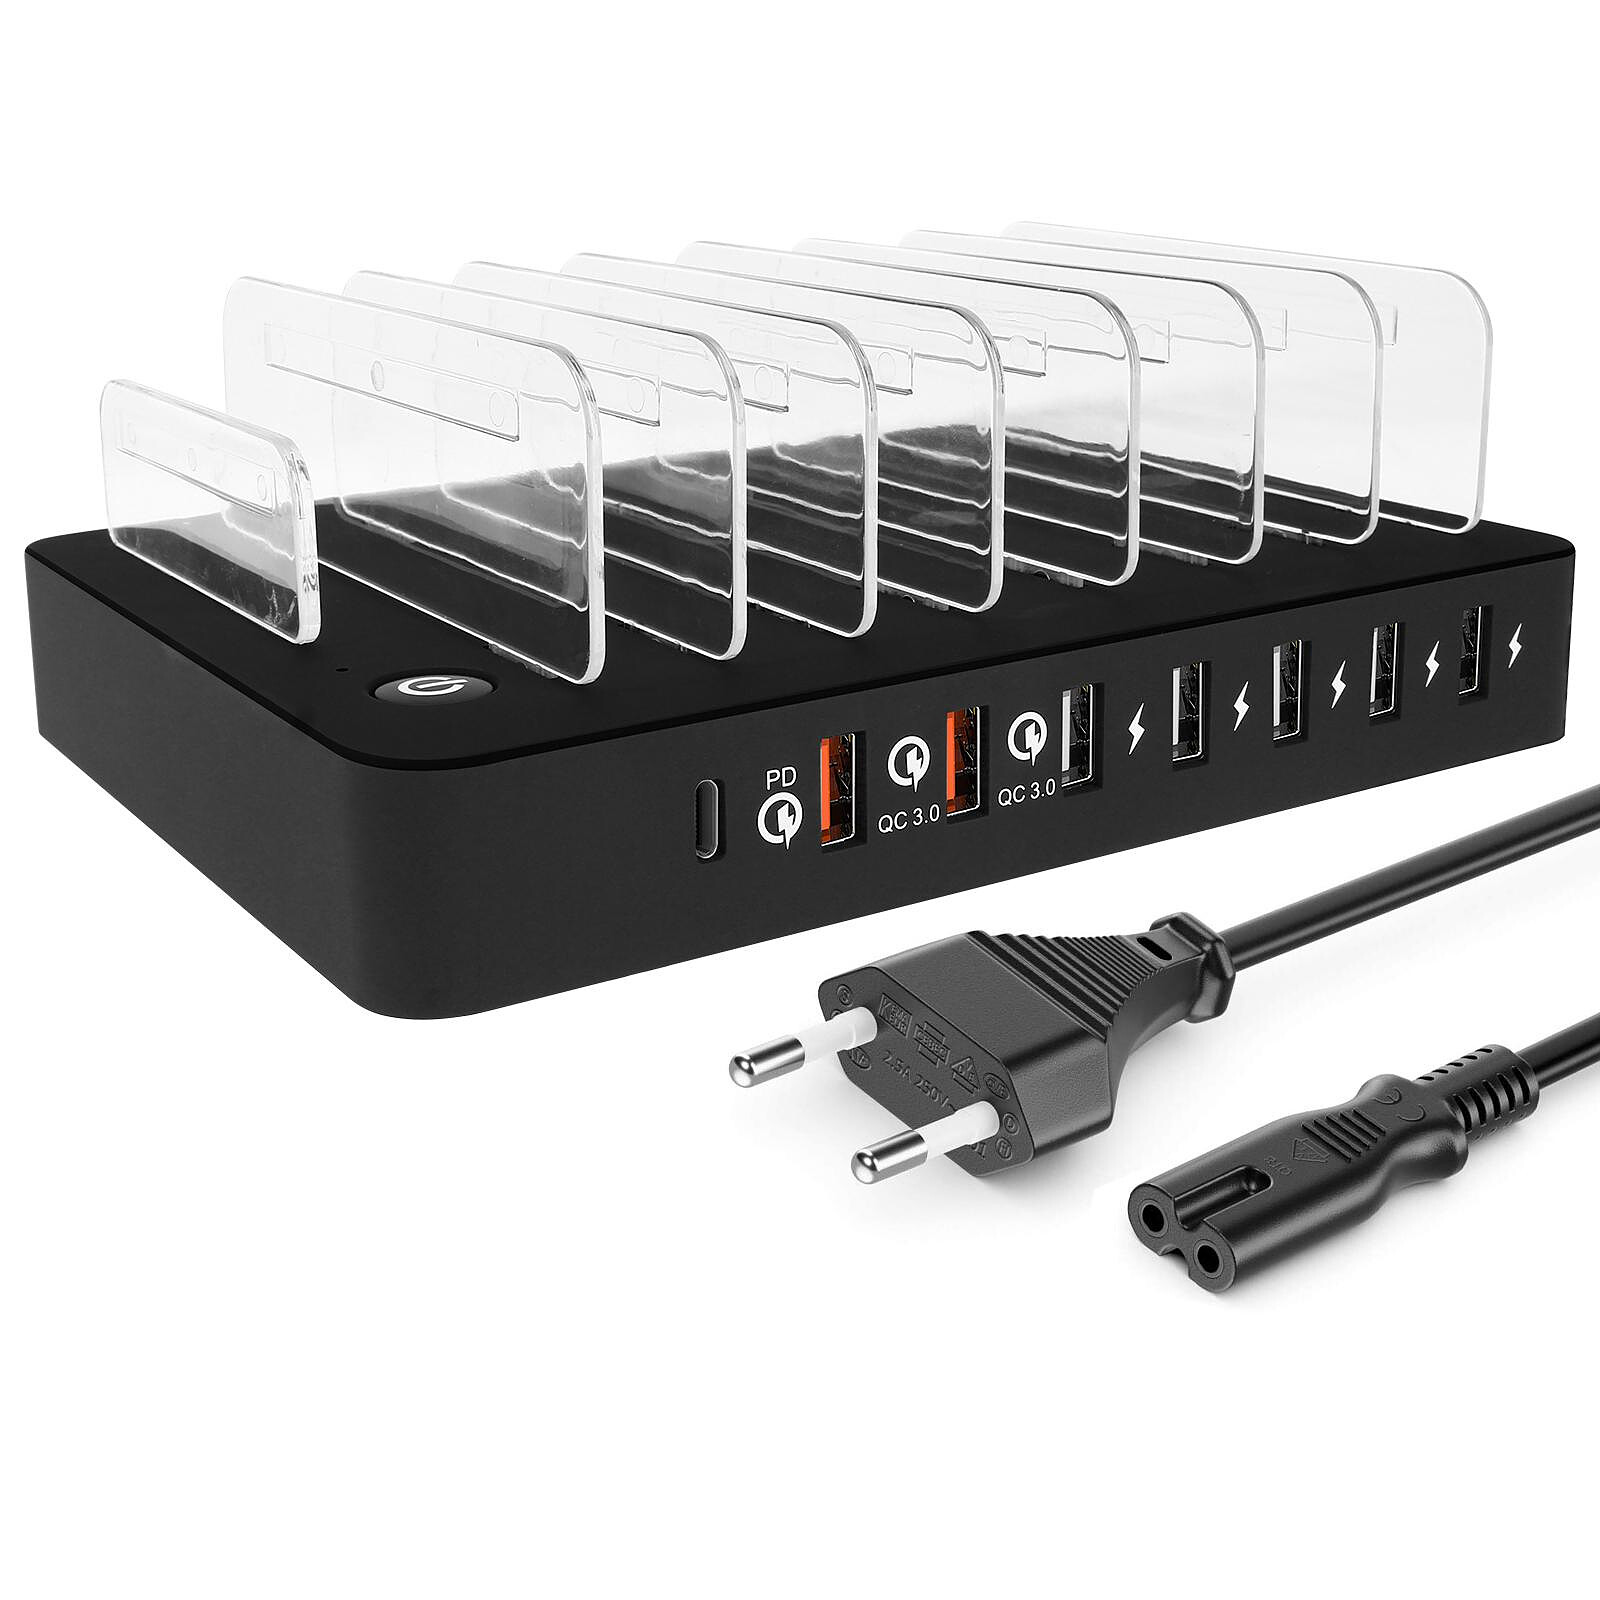 Avizar Station de charge Multiports 7 ports USB et 1 port USB-C Power  Delivery 45W Noir - Station d'accueil téléphone - LDLC